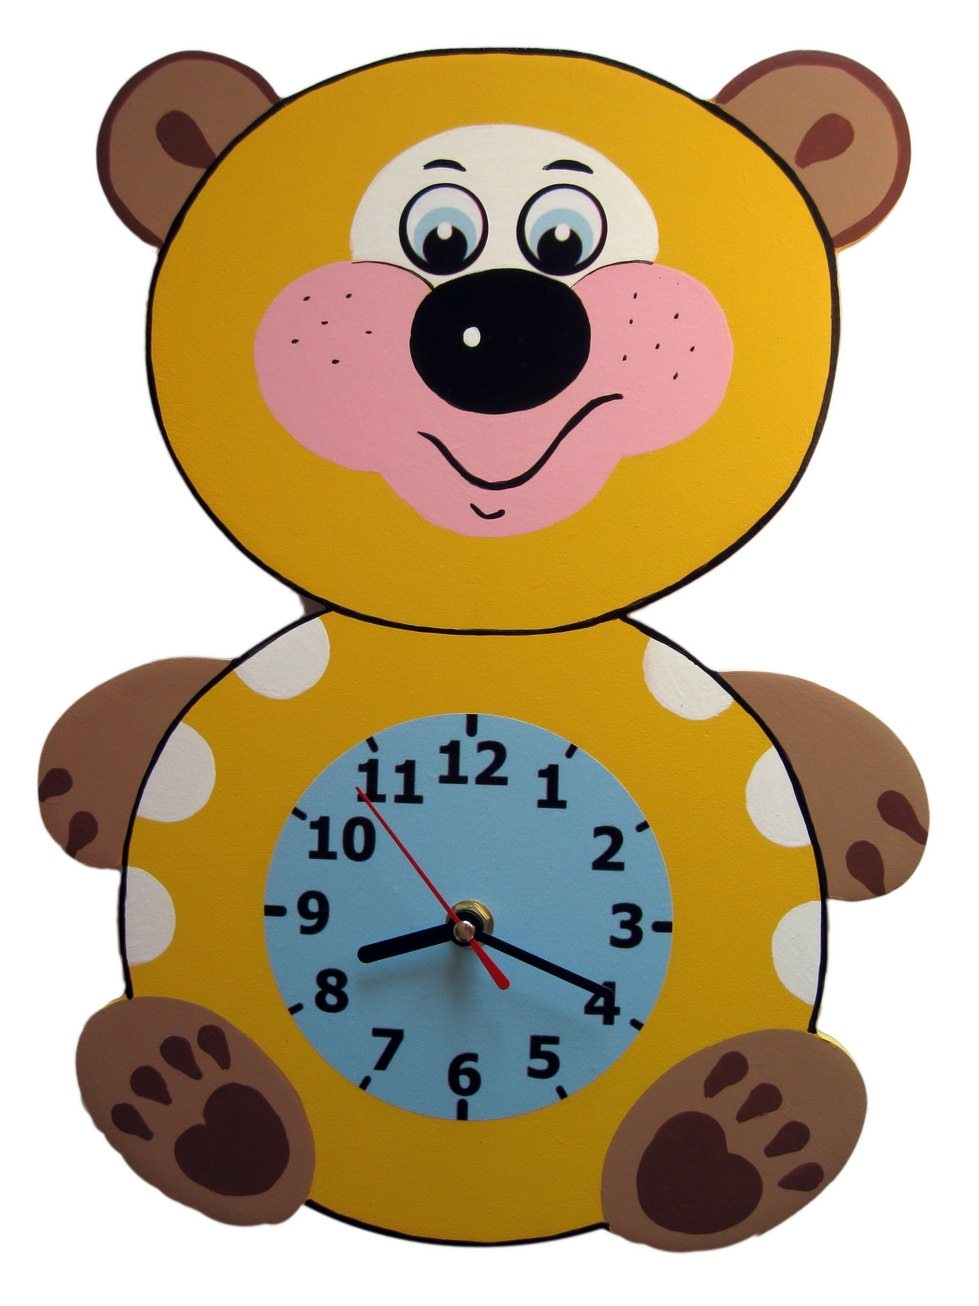 Картонные часы. Часы для детского сада. Часы из картона для детей. Часы картонные детские. Циферблат часов из картона.